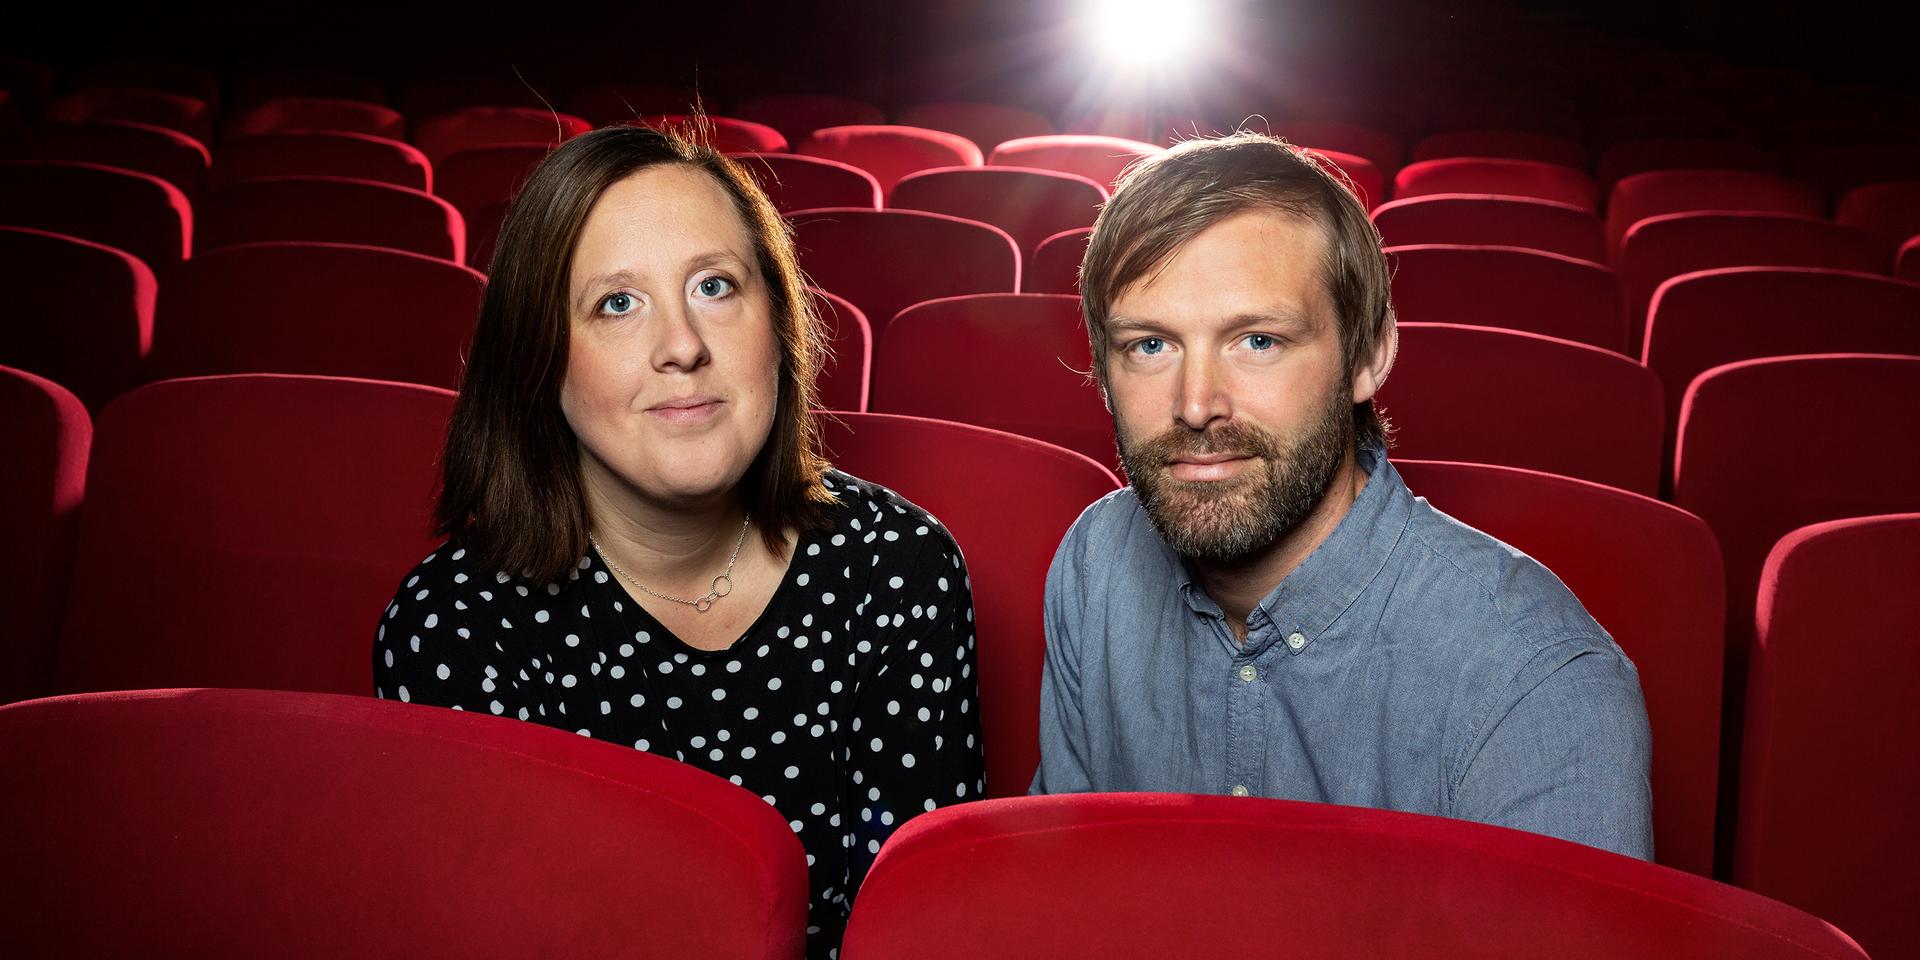 Årets Göteborgare blir filmfestivalen i Göteborg, här representerade av vd Mirja Wester och Jonas Holmberg, konstnärlig ledare. ”De har i 42 år tagit nordisk film ut i världen och bjudit in filmvärlden till Göteborg.” skriver juryn bland annat i sin motivering.